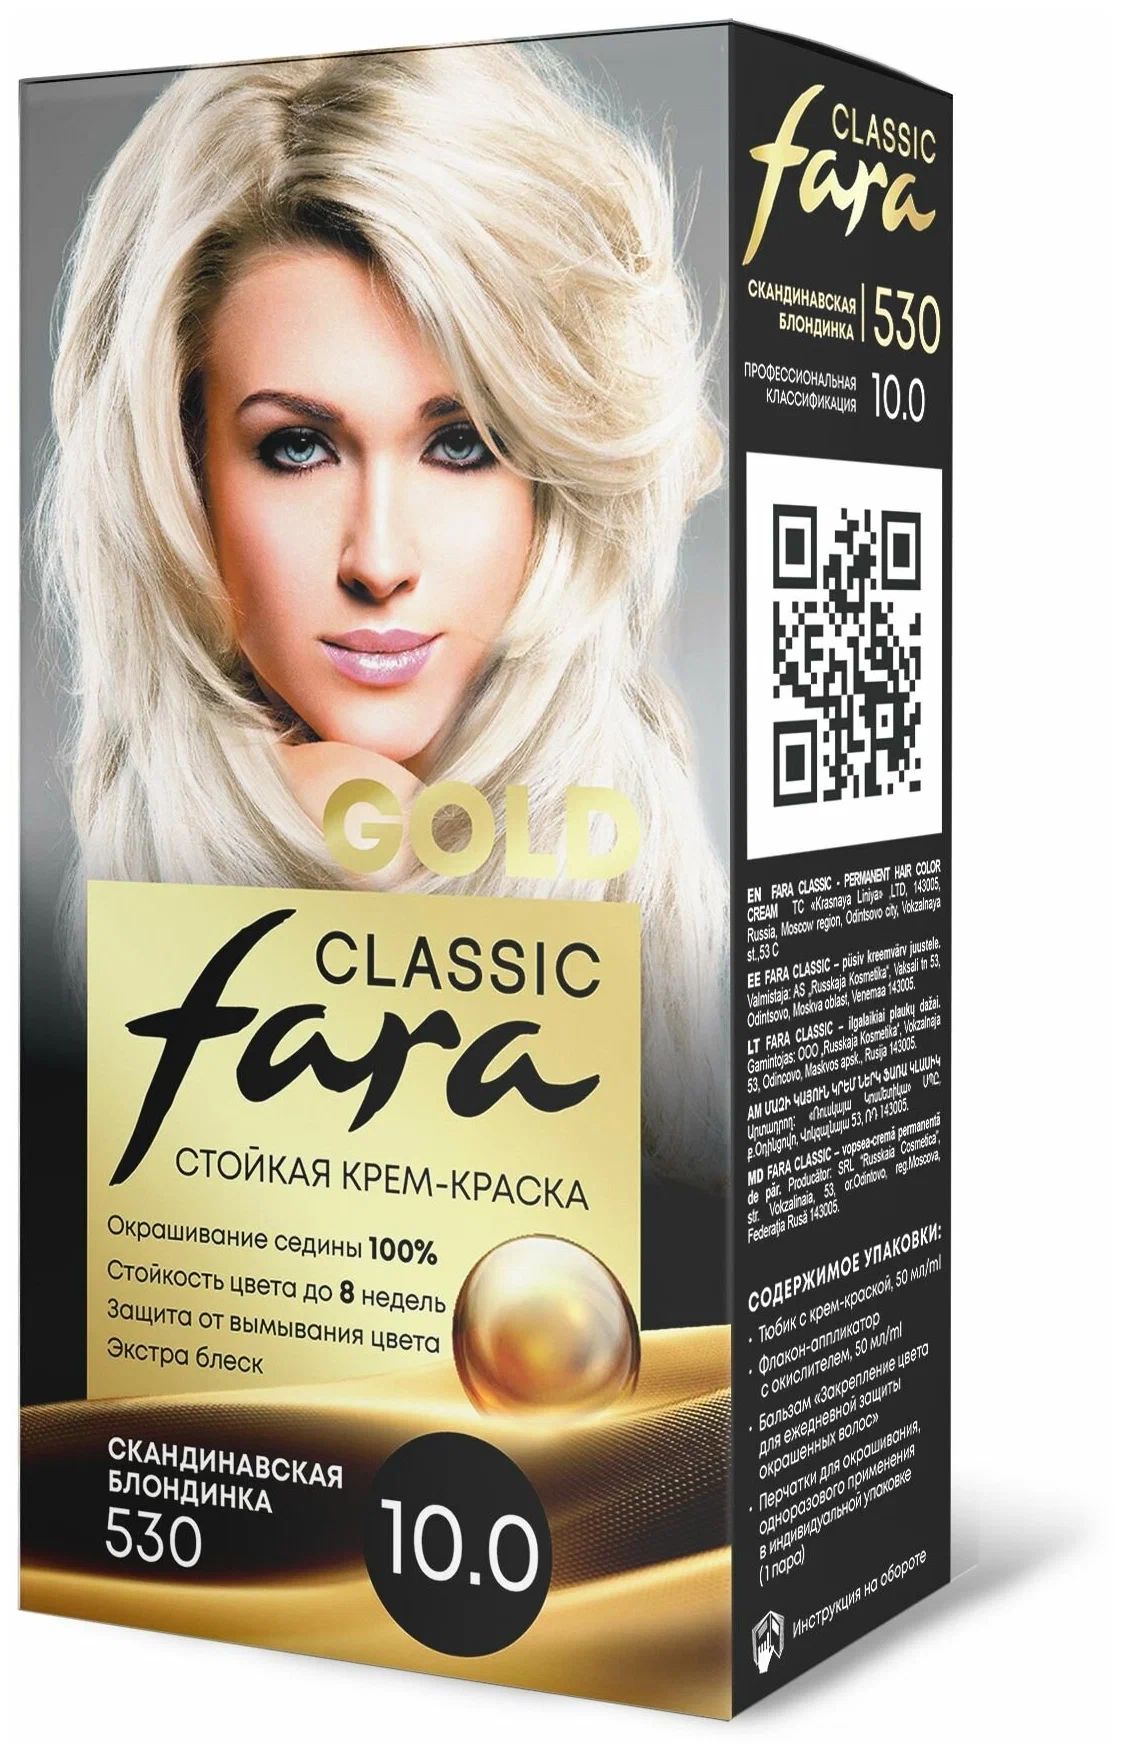 Крем-краска для волос Fara Classic Gold 530 скандинавская блондинка 10.0, 140 г fiory classic корм для морских свинок и шиншилл 800 гр